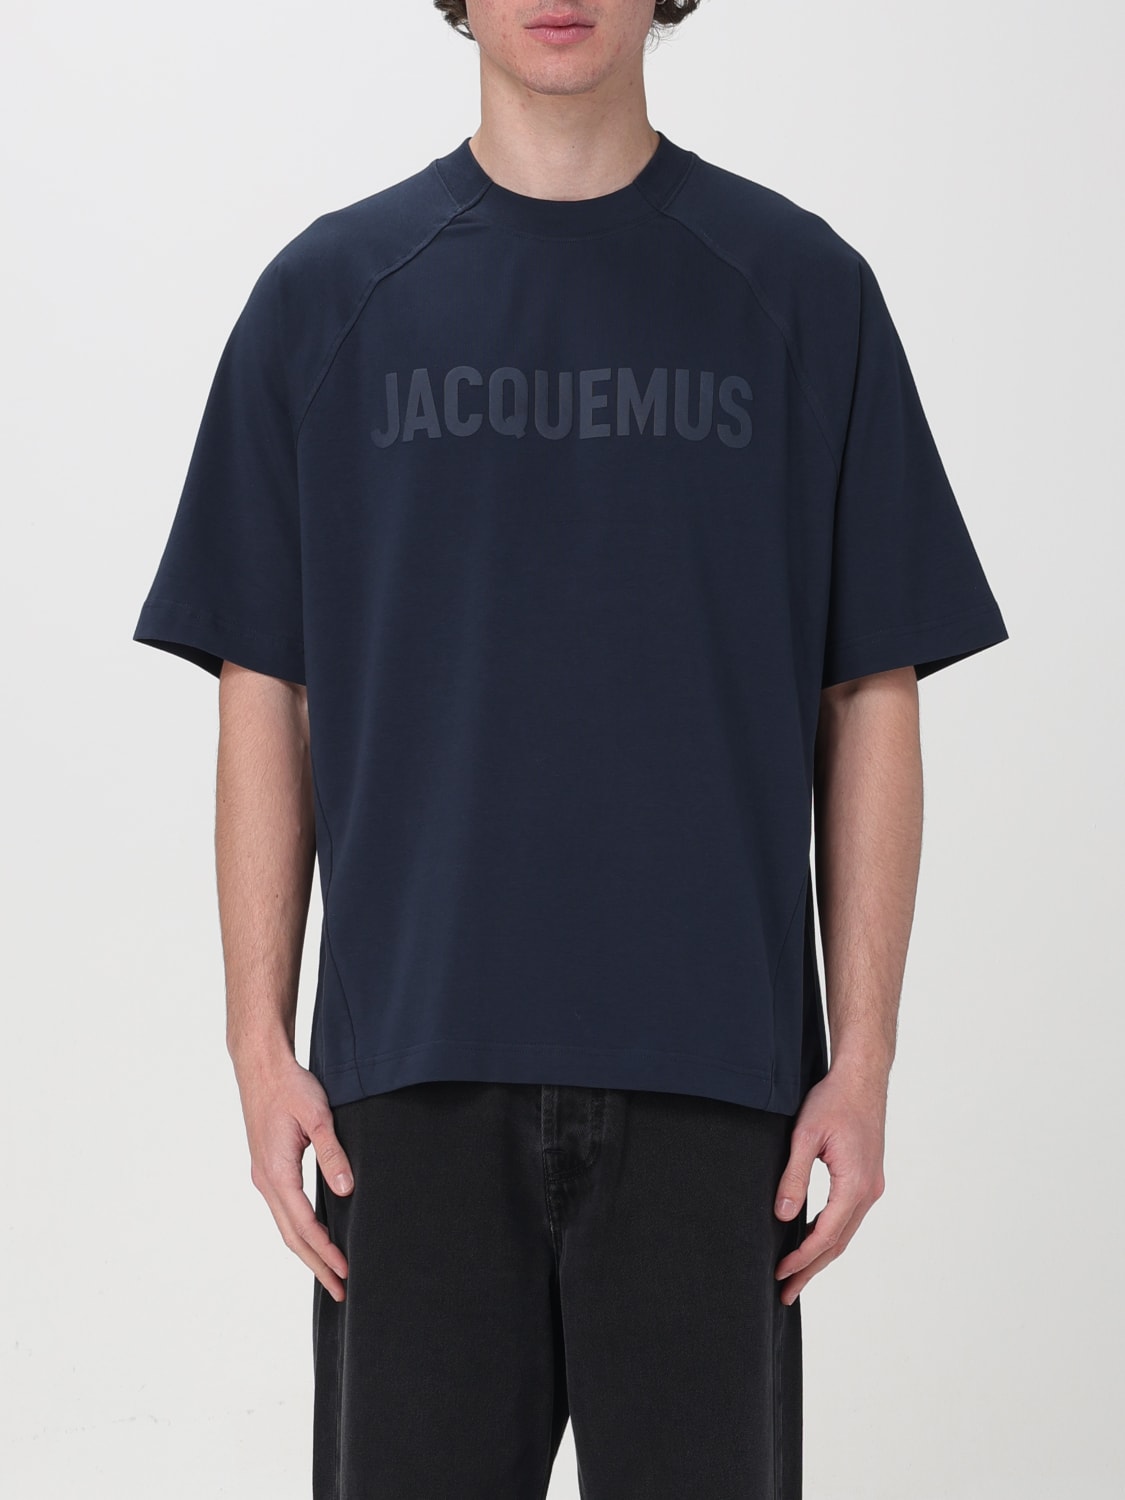 身幅46cmJacquemus t-shirt